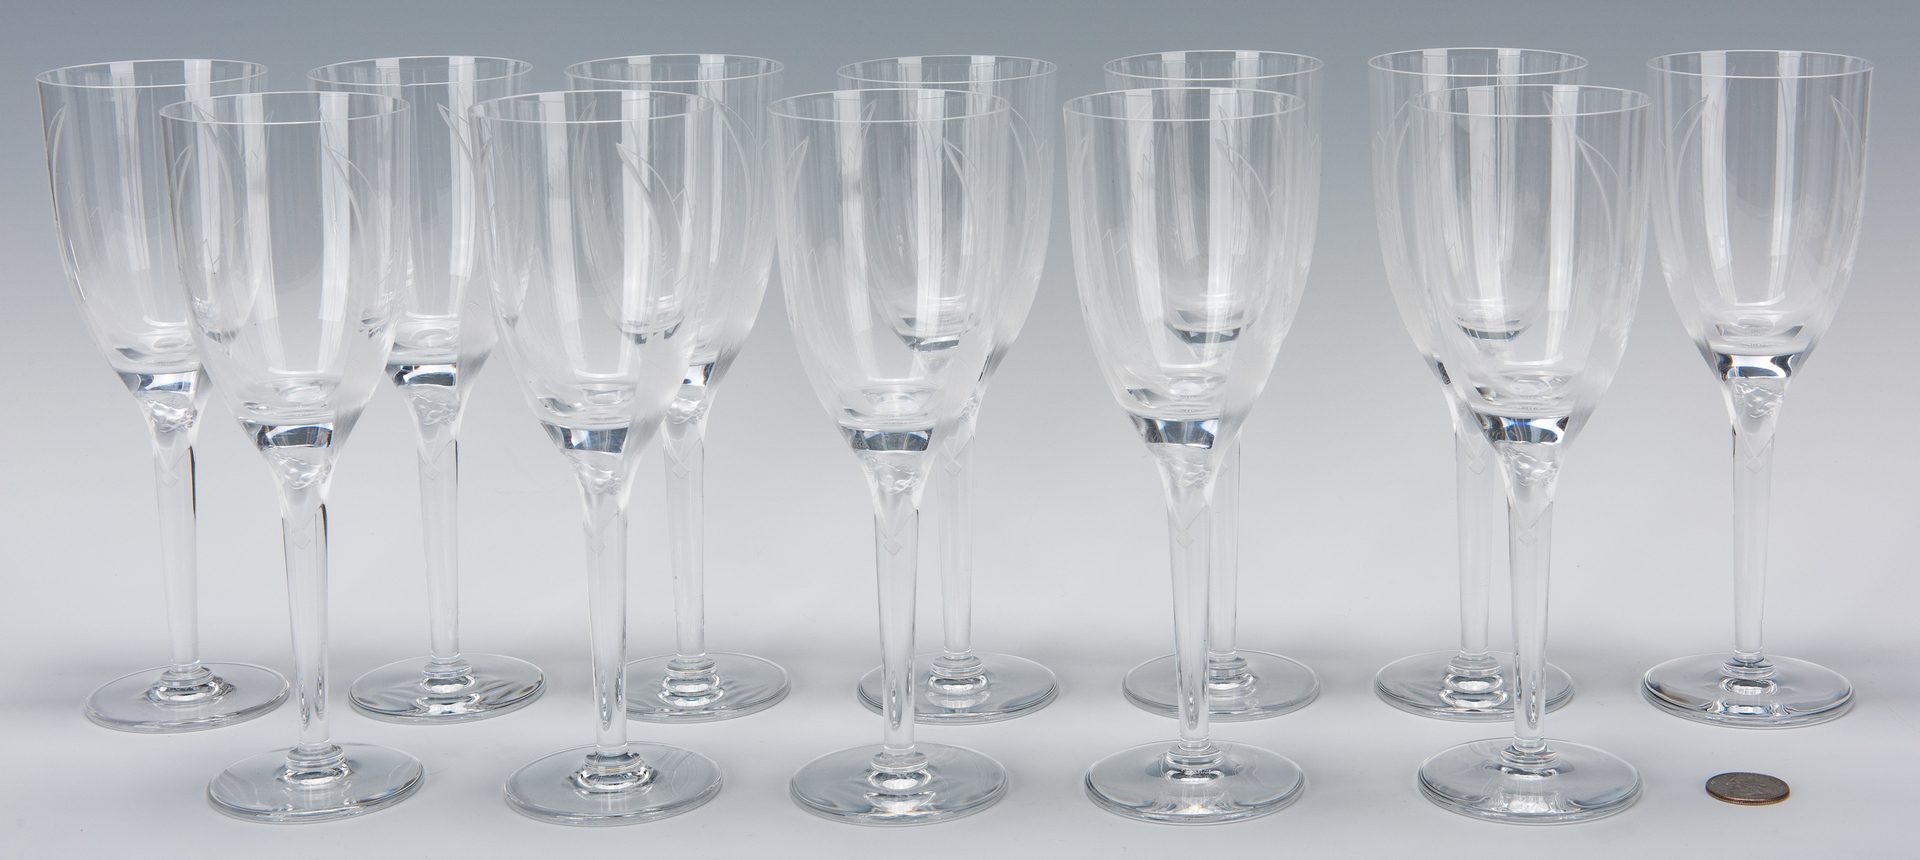 Lot 568: Set of 12 Lalique Champagne Flutes